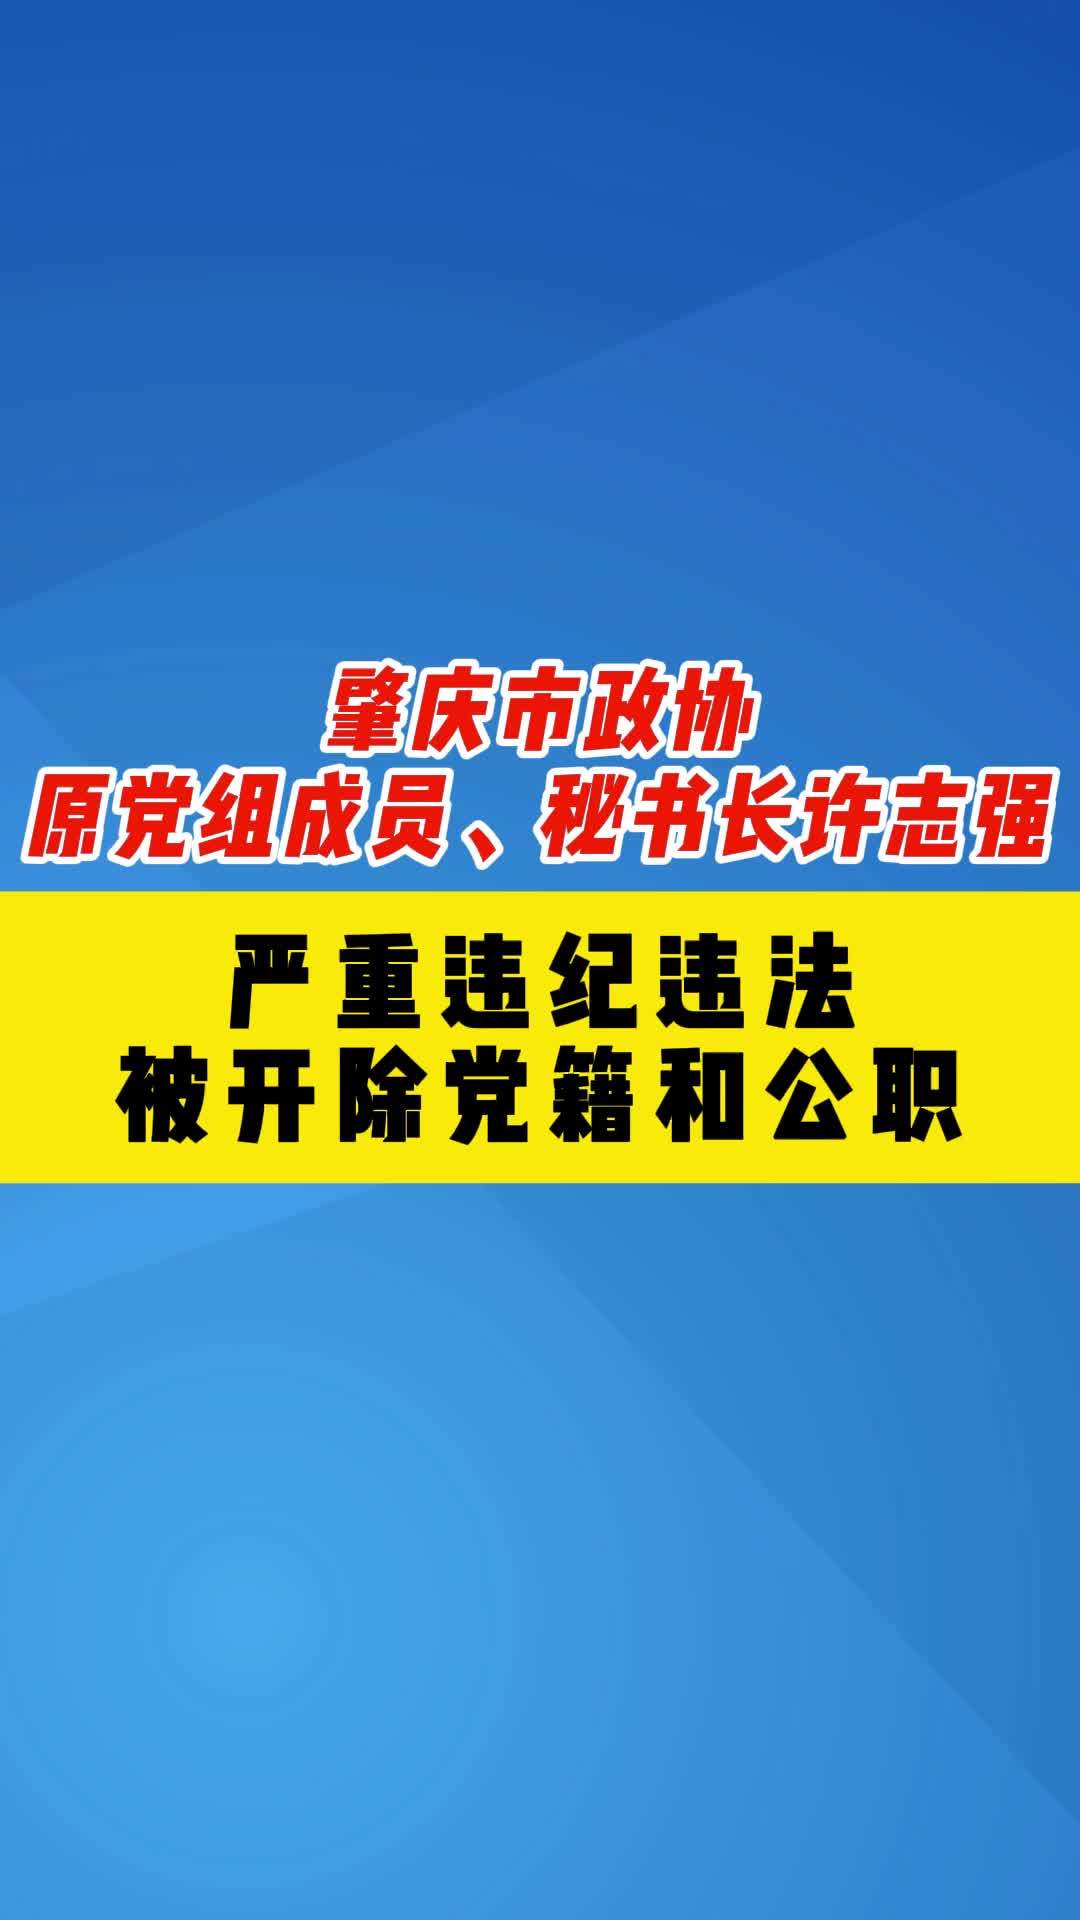 肇庆市政协原党组成员秘书长许志强严重违纪违法被开除党籍和公职通报